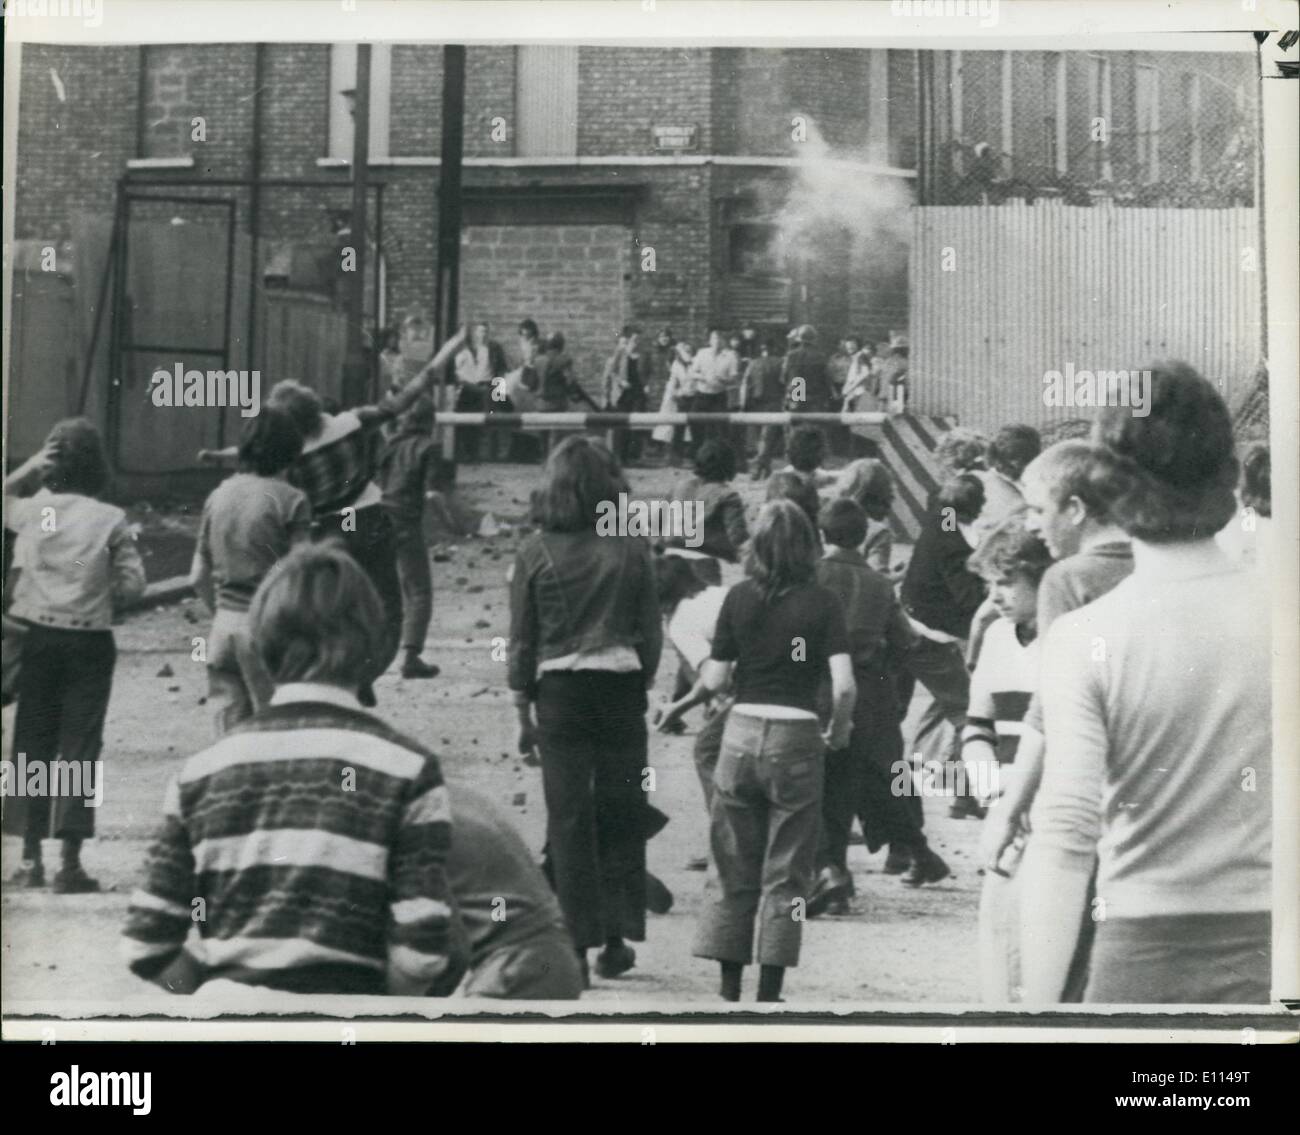 8. August 1975 - vier-Jahr-altes Mädchen In Ulster Feuergefechten getötet; Ein 4 - Jahres altes Mädchen getötet wurde gestern Abend während der Gub Kämpfe zwischen Truppen und Terroristen im Bereich Lower Falls von Belfast. Der Kampf war der Höhepunkt der Ulster die heftigsten Wochenende seit Beginn der Provisional IRA ihren Waffenstillstand vor acht Monaten. Die Schießereien, m vorsah Protestanten und Katholiken, brach AS 300 katholischen Jugendlichen nach einer 2, 000 Mann starke Rallye durch den protestantischen Bereich Percy und Northumberland Street randalierten Stockfoto